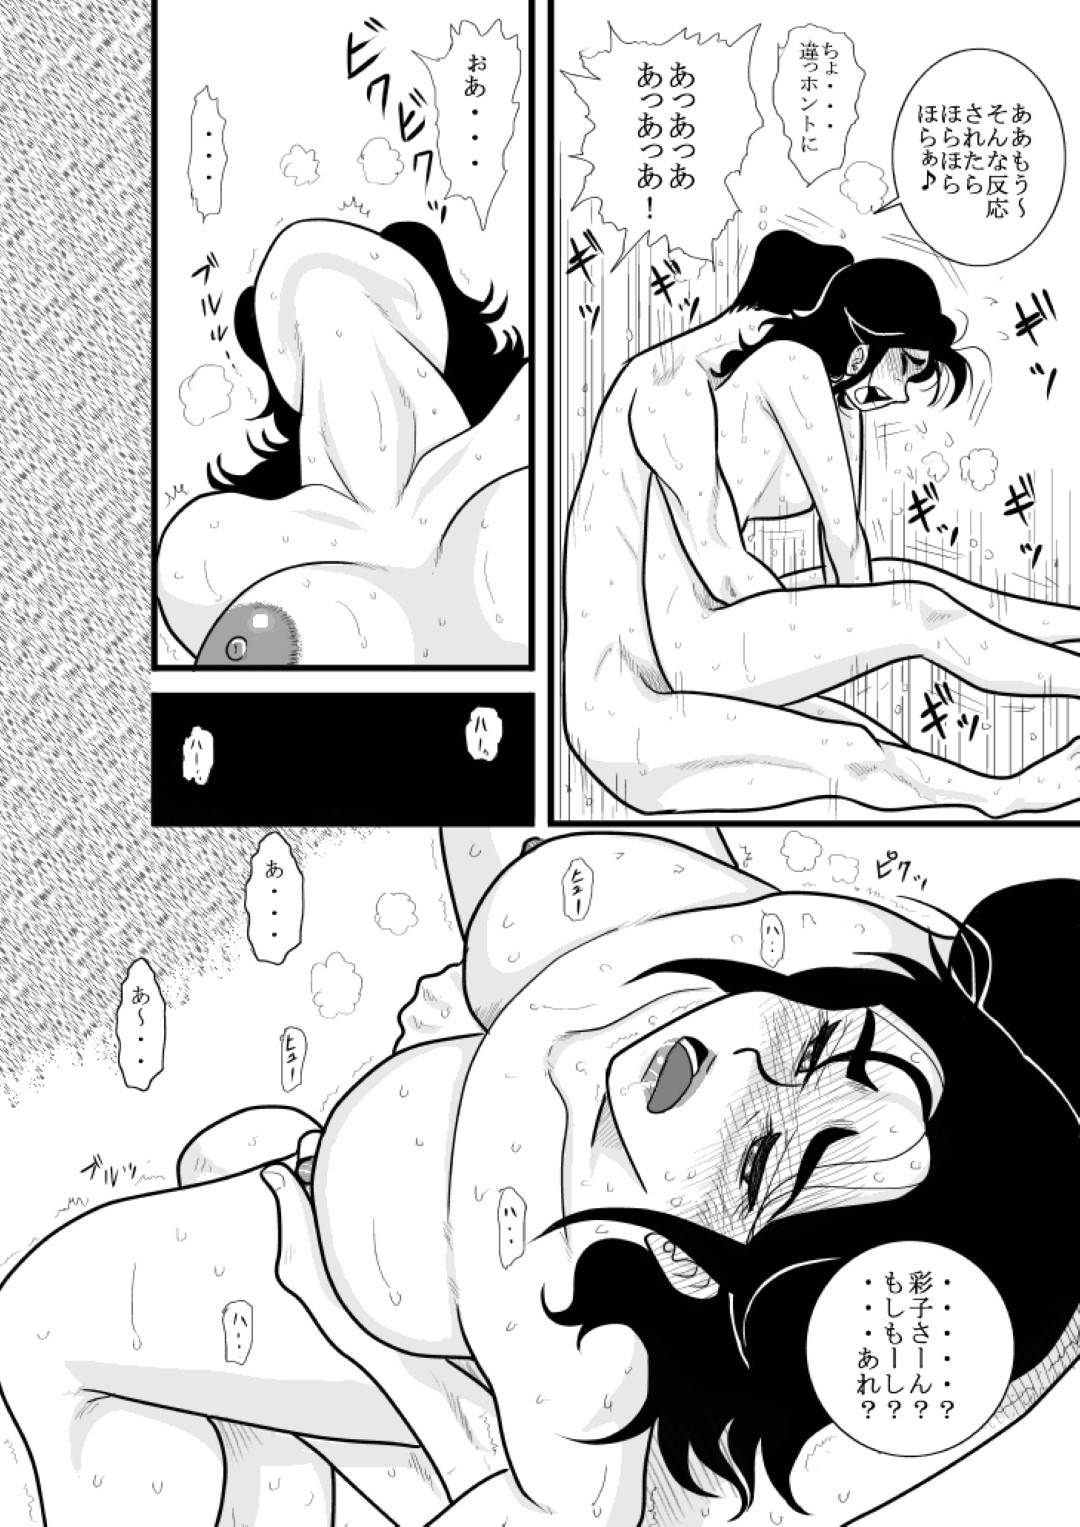 【エロ漫画】沙羅は、女に薬を盛られ目が覚めるとリングの上だった。オープンセックスパーティーと称して沙羅は観客の男達に襲われ屈辱の中出しファックで犯される【FAKE庵】